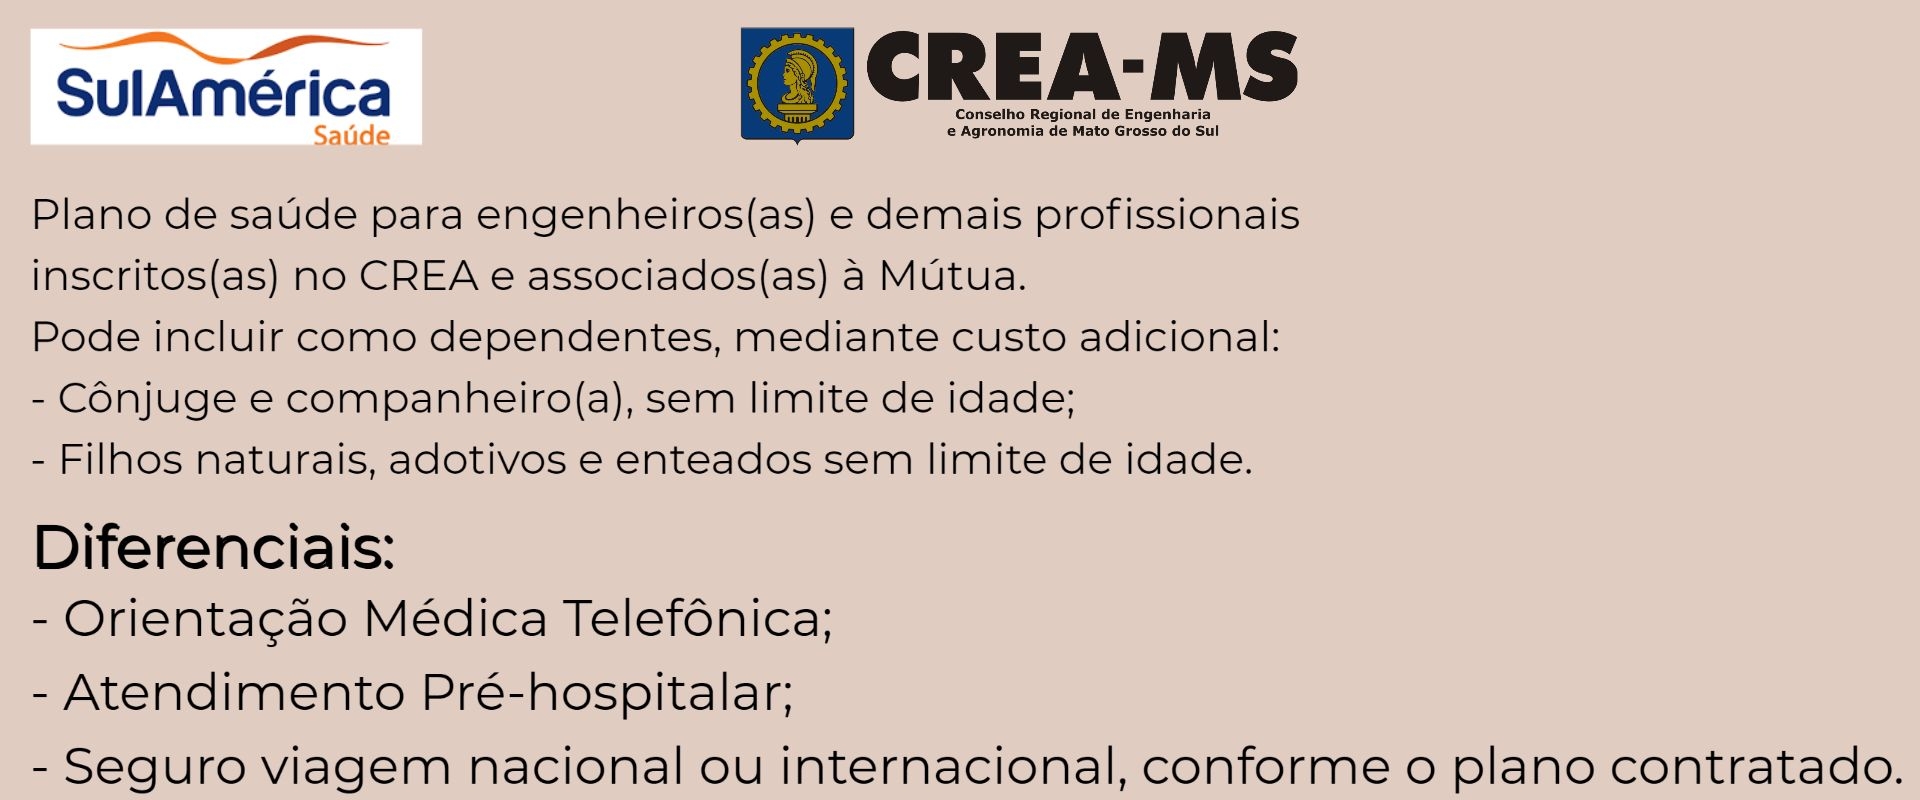 Sul América Saúde CREA-MS